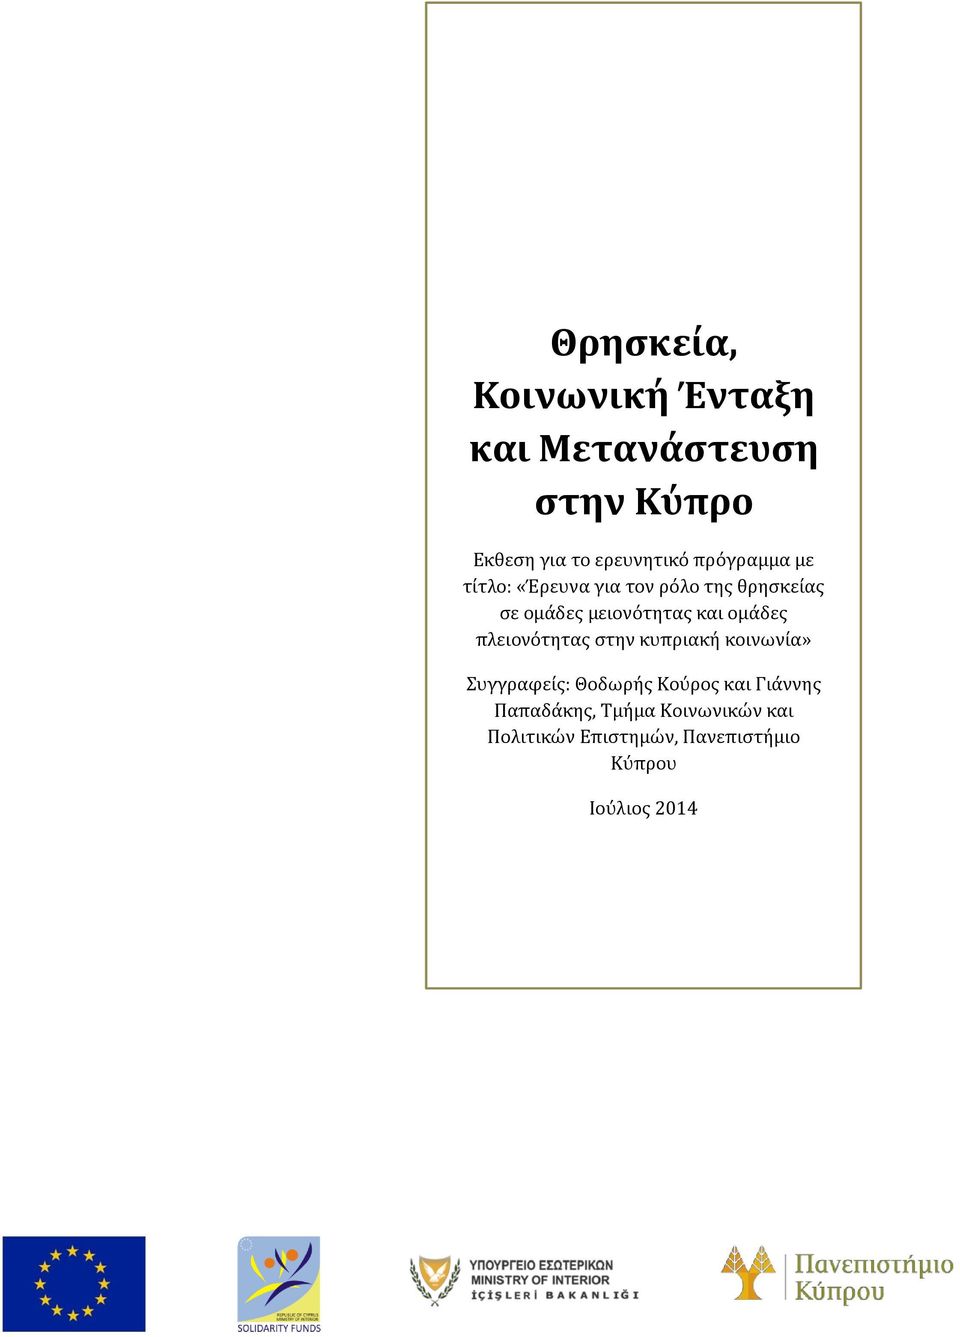 ομάδες πλειονότητας στην κυπριακή κοινωνία» Συγγραφείς: Θοδωρής Κούρος και Γιάννης